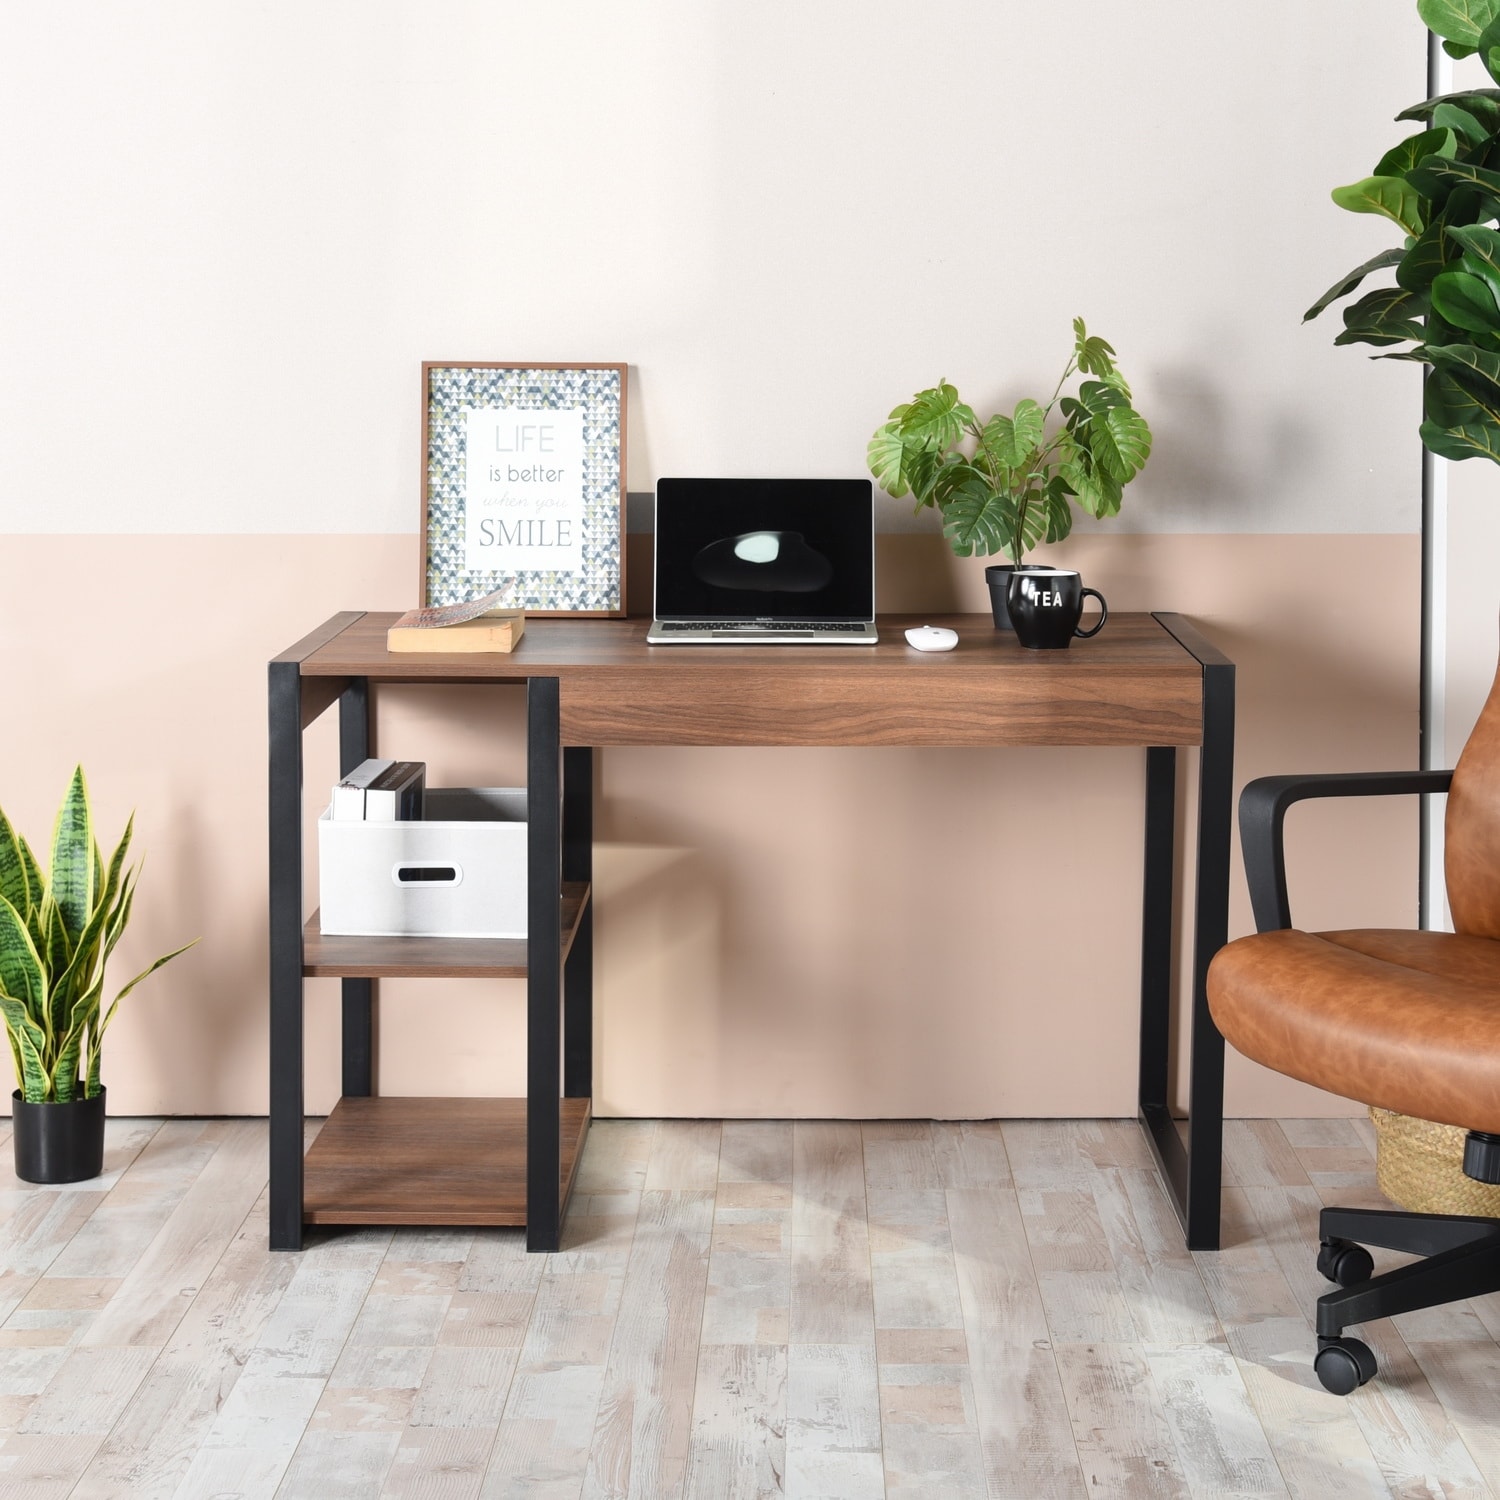 47.2 Home Office Desk, Computer Desk, Storage Desk Morden Style with Open  Shelves Worksation, Brown & Black - Bed Bath & Beyond - 36256637